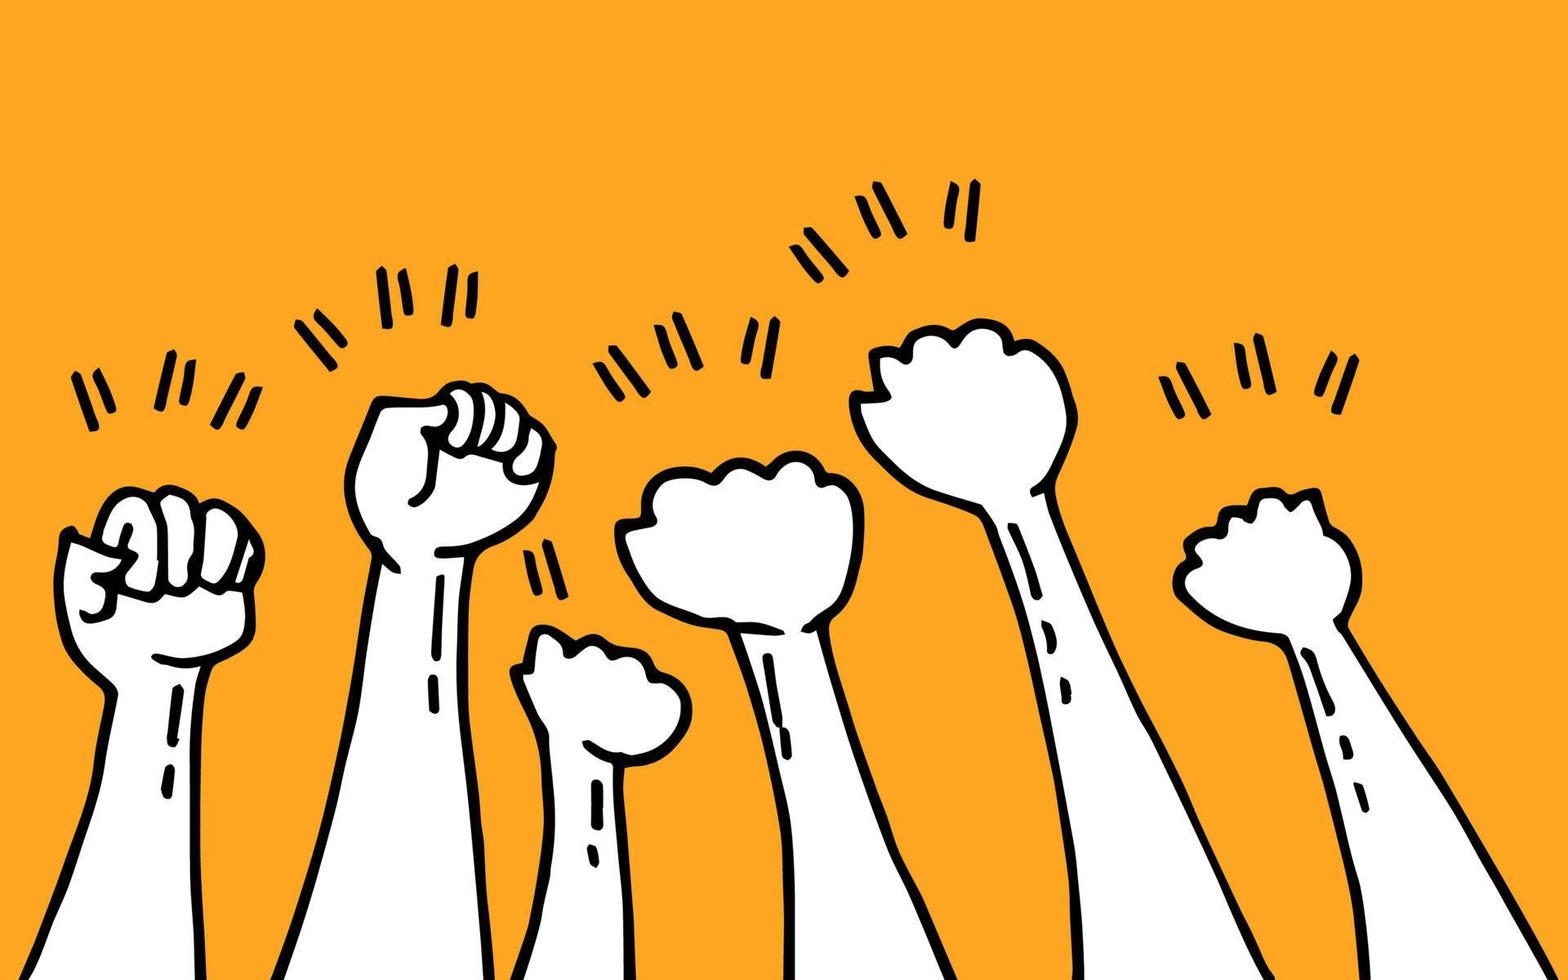 doodle händerna upp. knytnäve hand, protest symbol, makt tecken på tecknad stil. vektor illustration